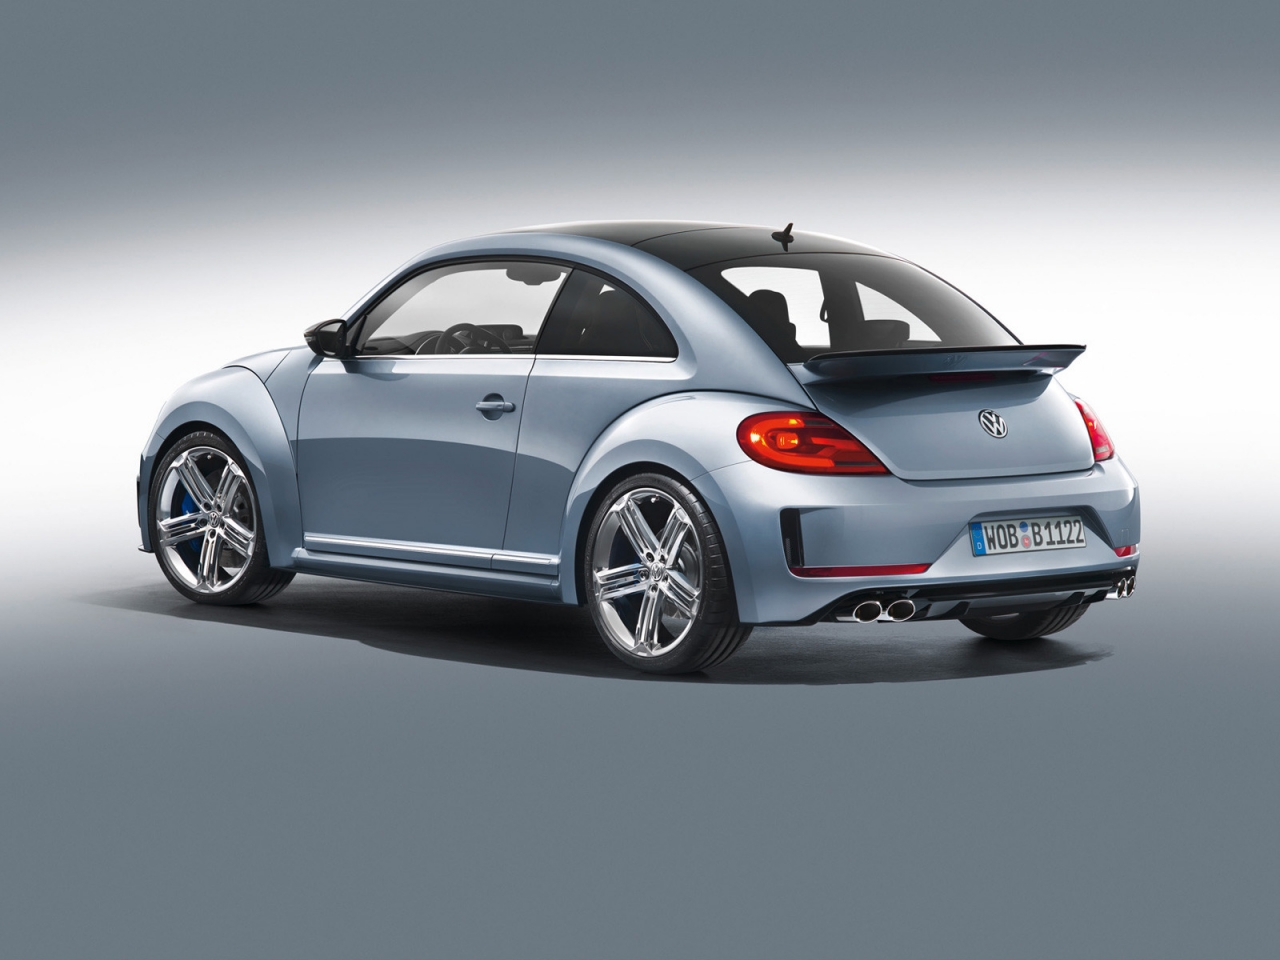 2011 Volkswagen Beetle R Concept Studio for 1280 x 960 resolution